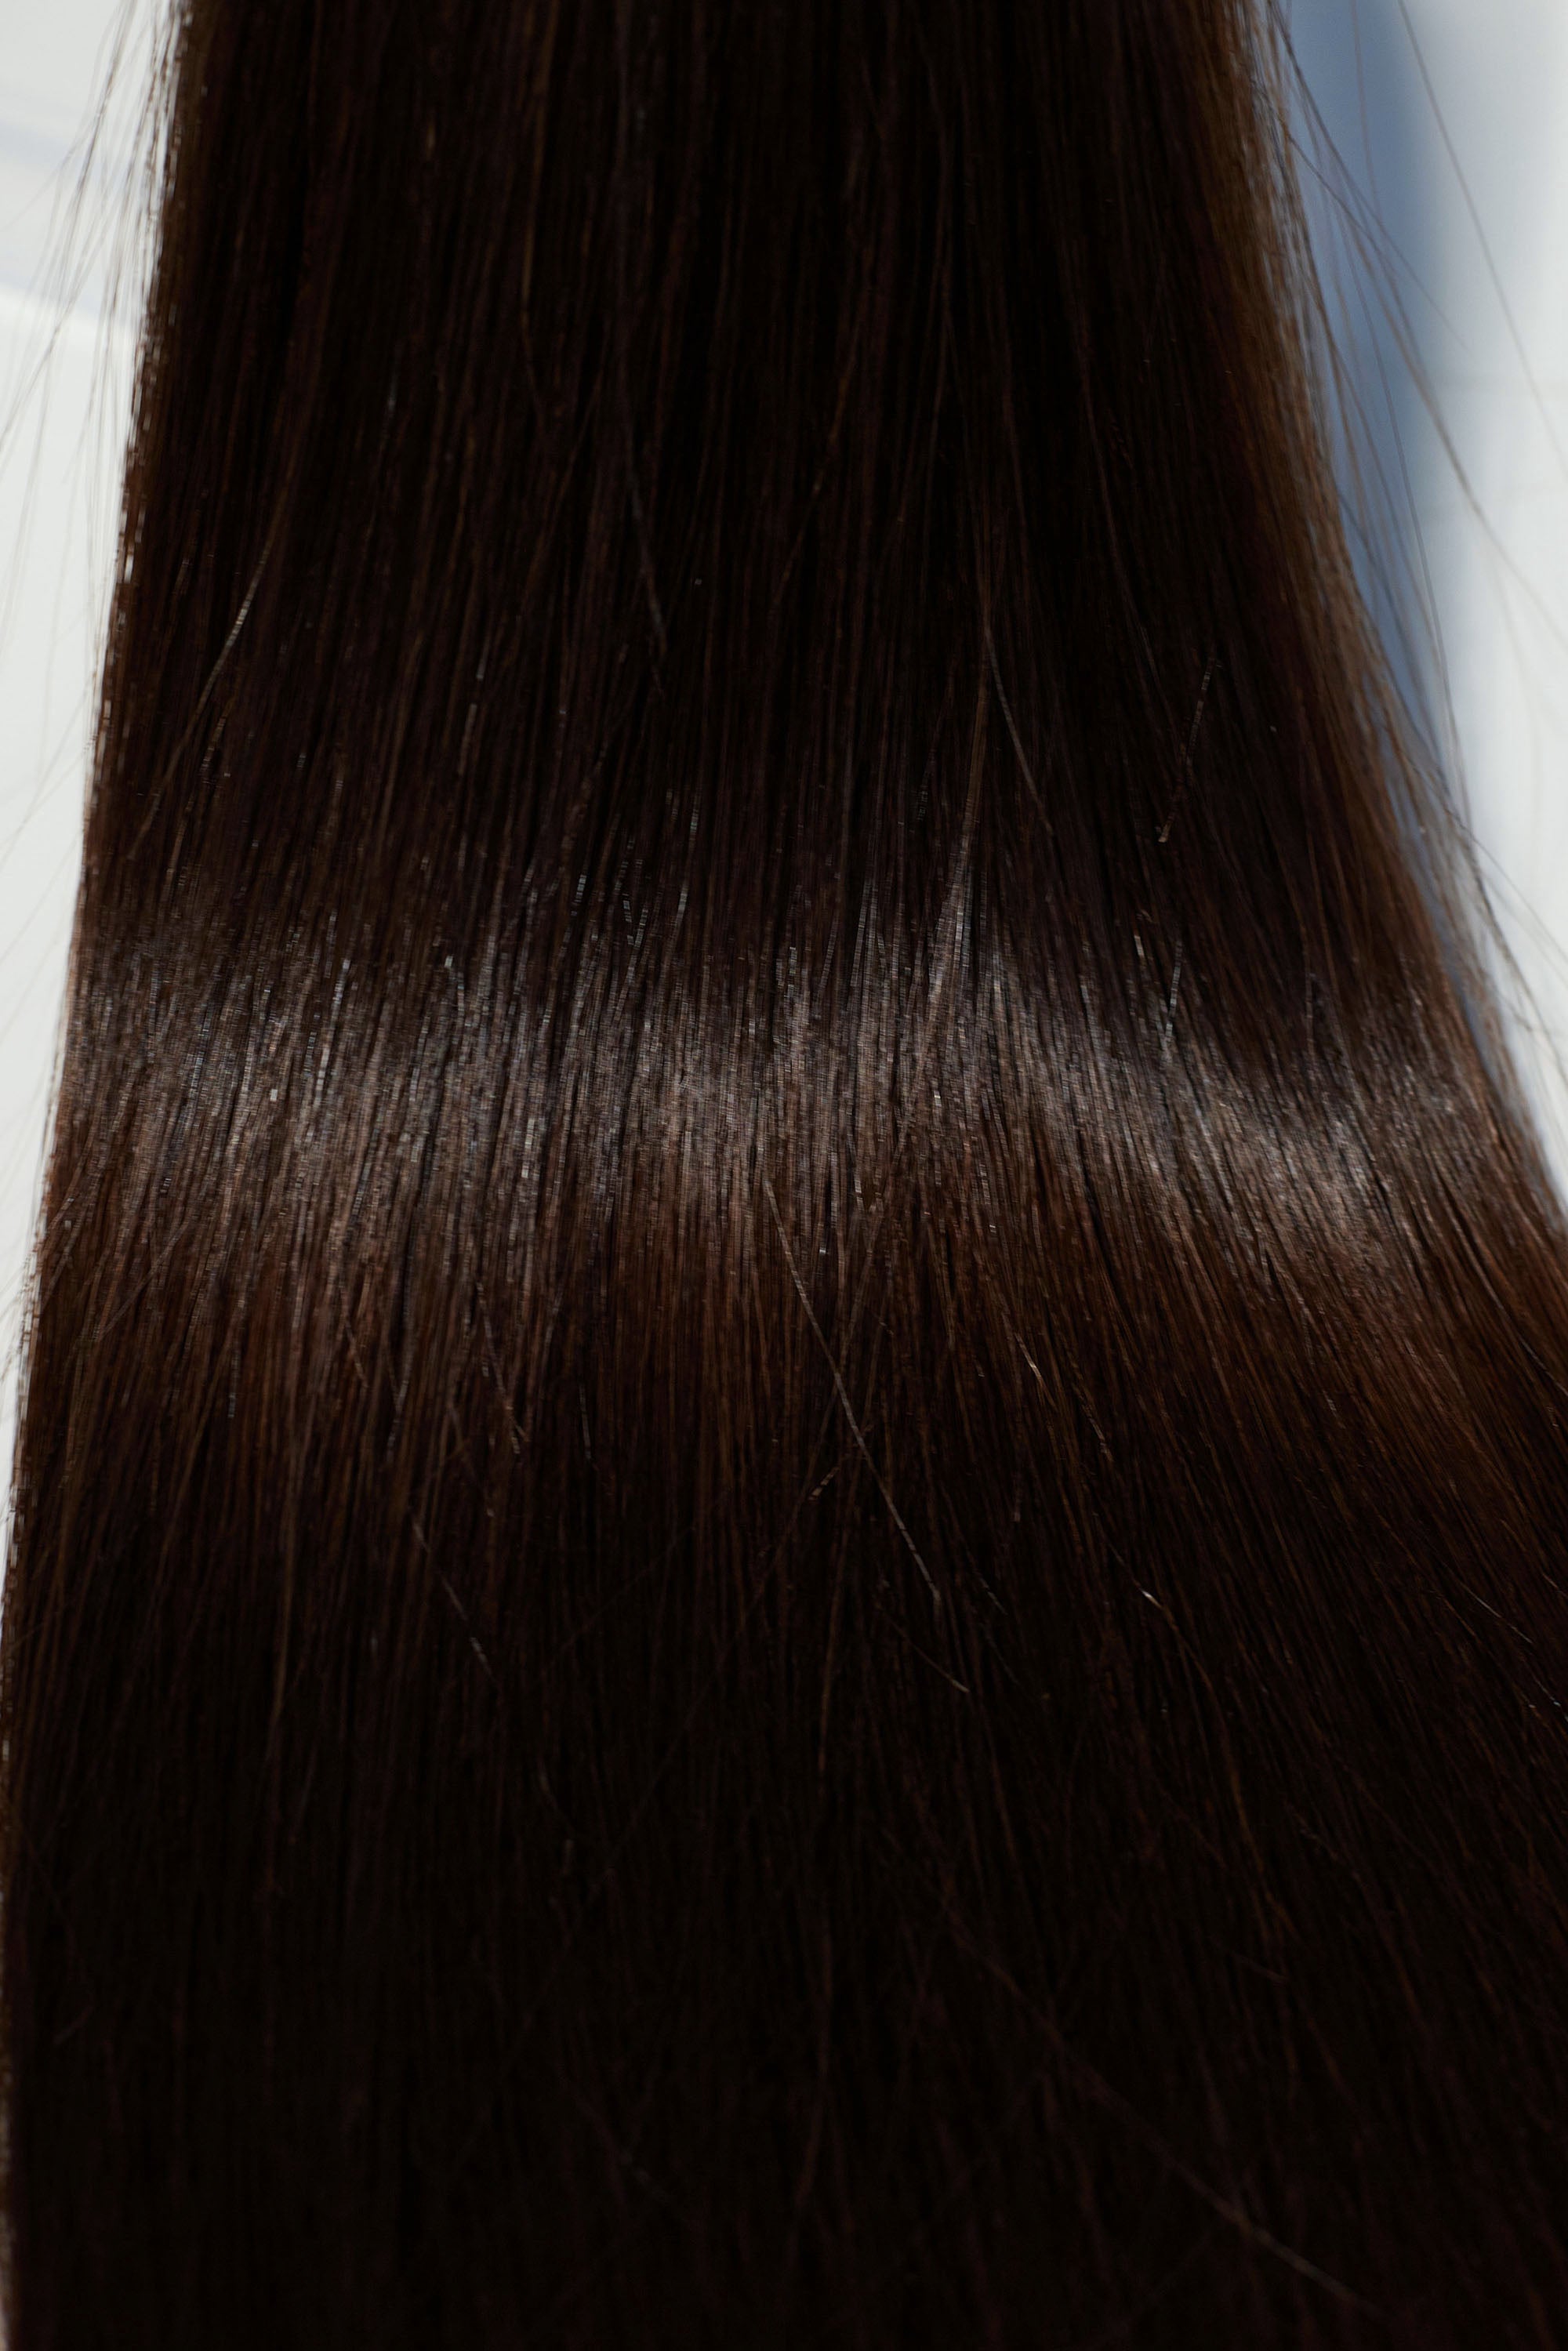 Behair professional Bulk hair "Premium" 22" (55cm) Natural Straight Dark Coffee Brown #2 - 25g hair extensions